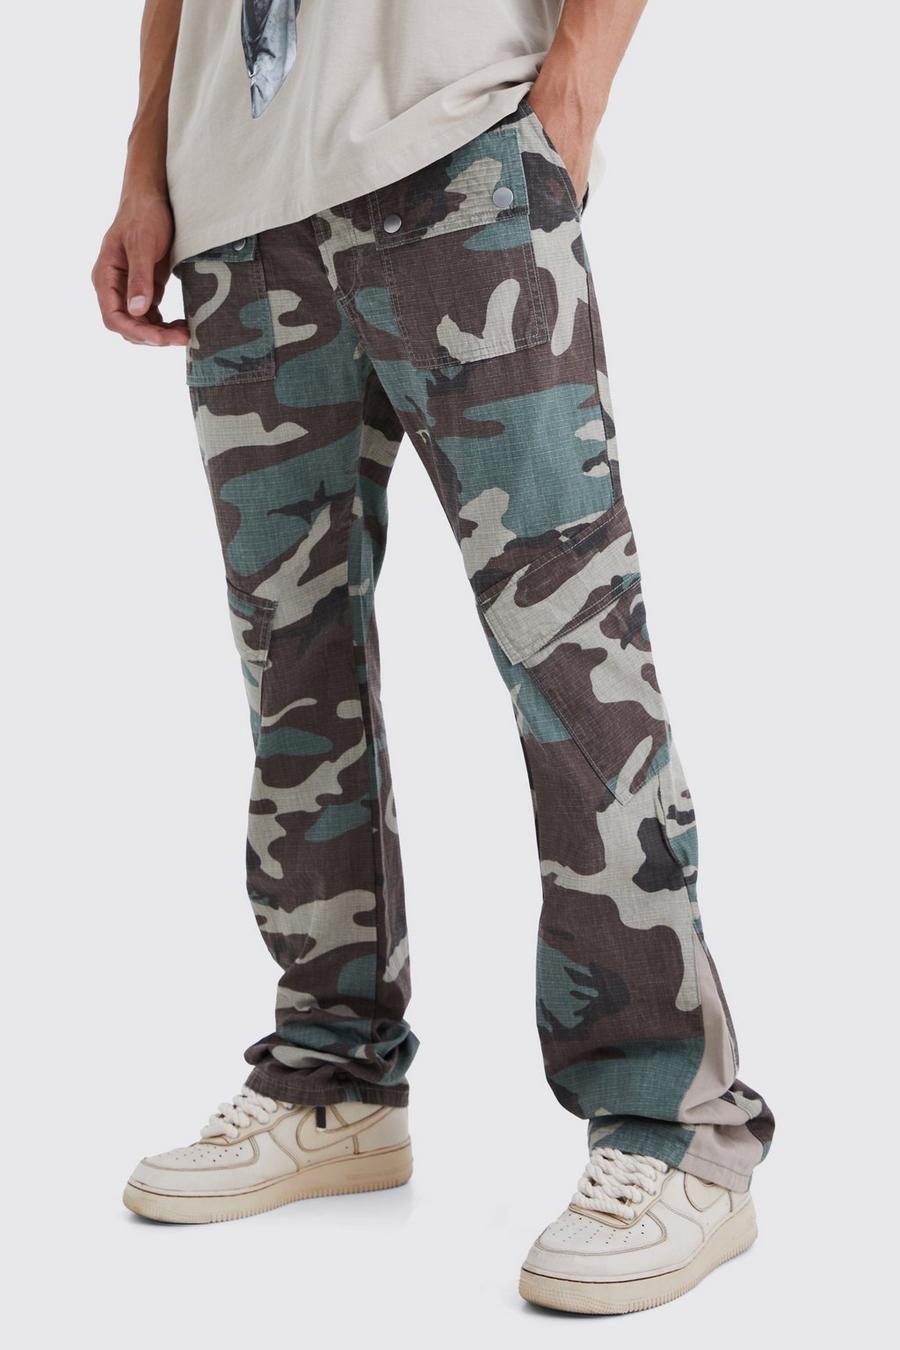 Pantaloni a zampa Tall Slim Fit in fantasia militare con inserti e pieghe sul fondo, Khaki caqui